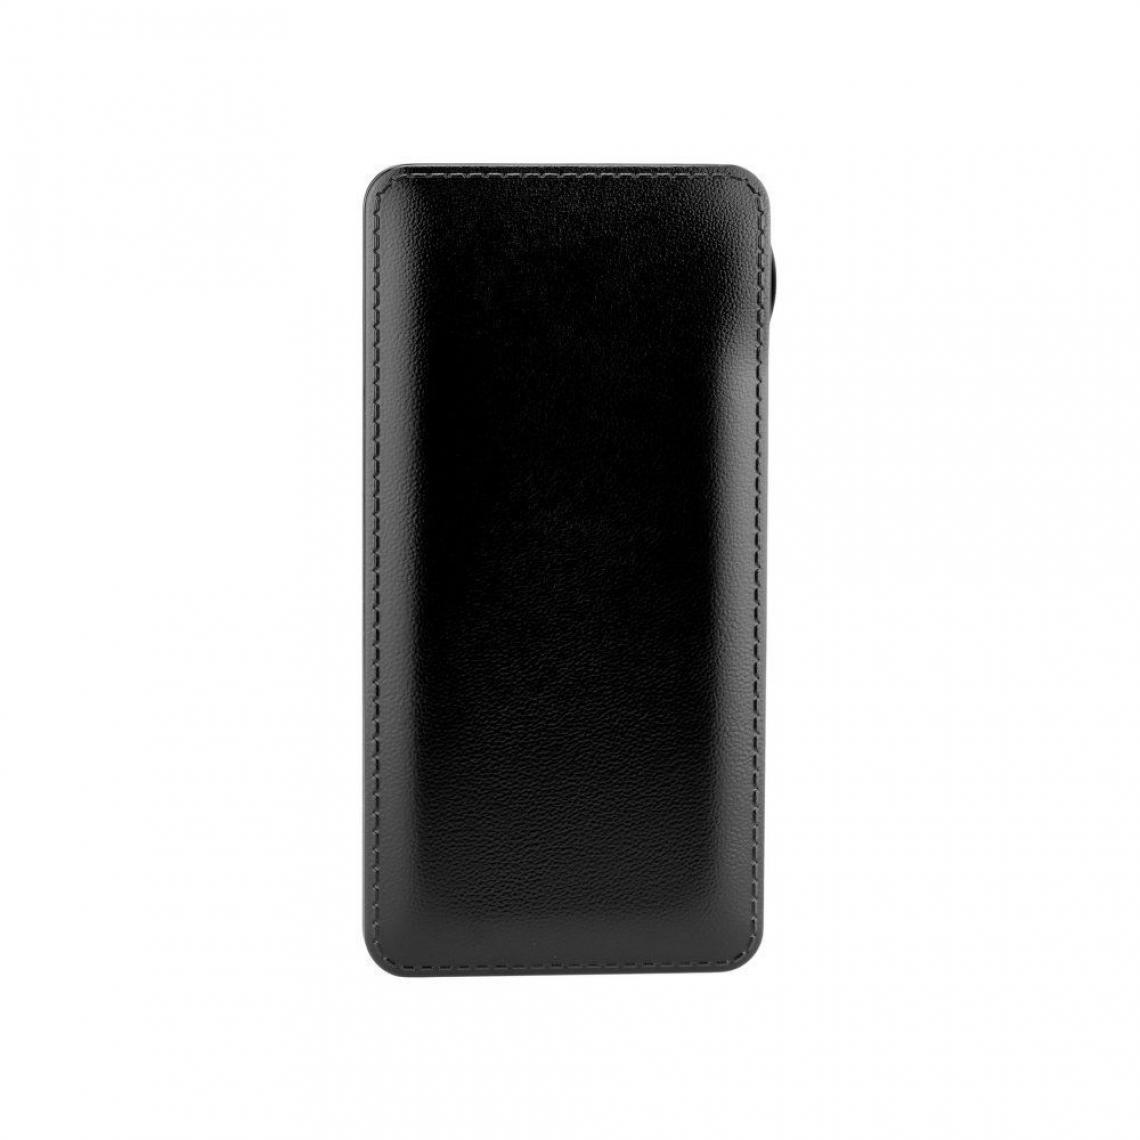 Ozzzo - Chargeur batterie externe 20000 mAh powerbank ozzzo noir pour Teclast X3 Pro - Autres accessoires smartphone